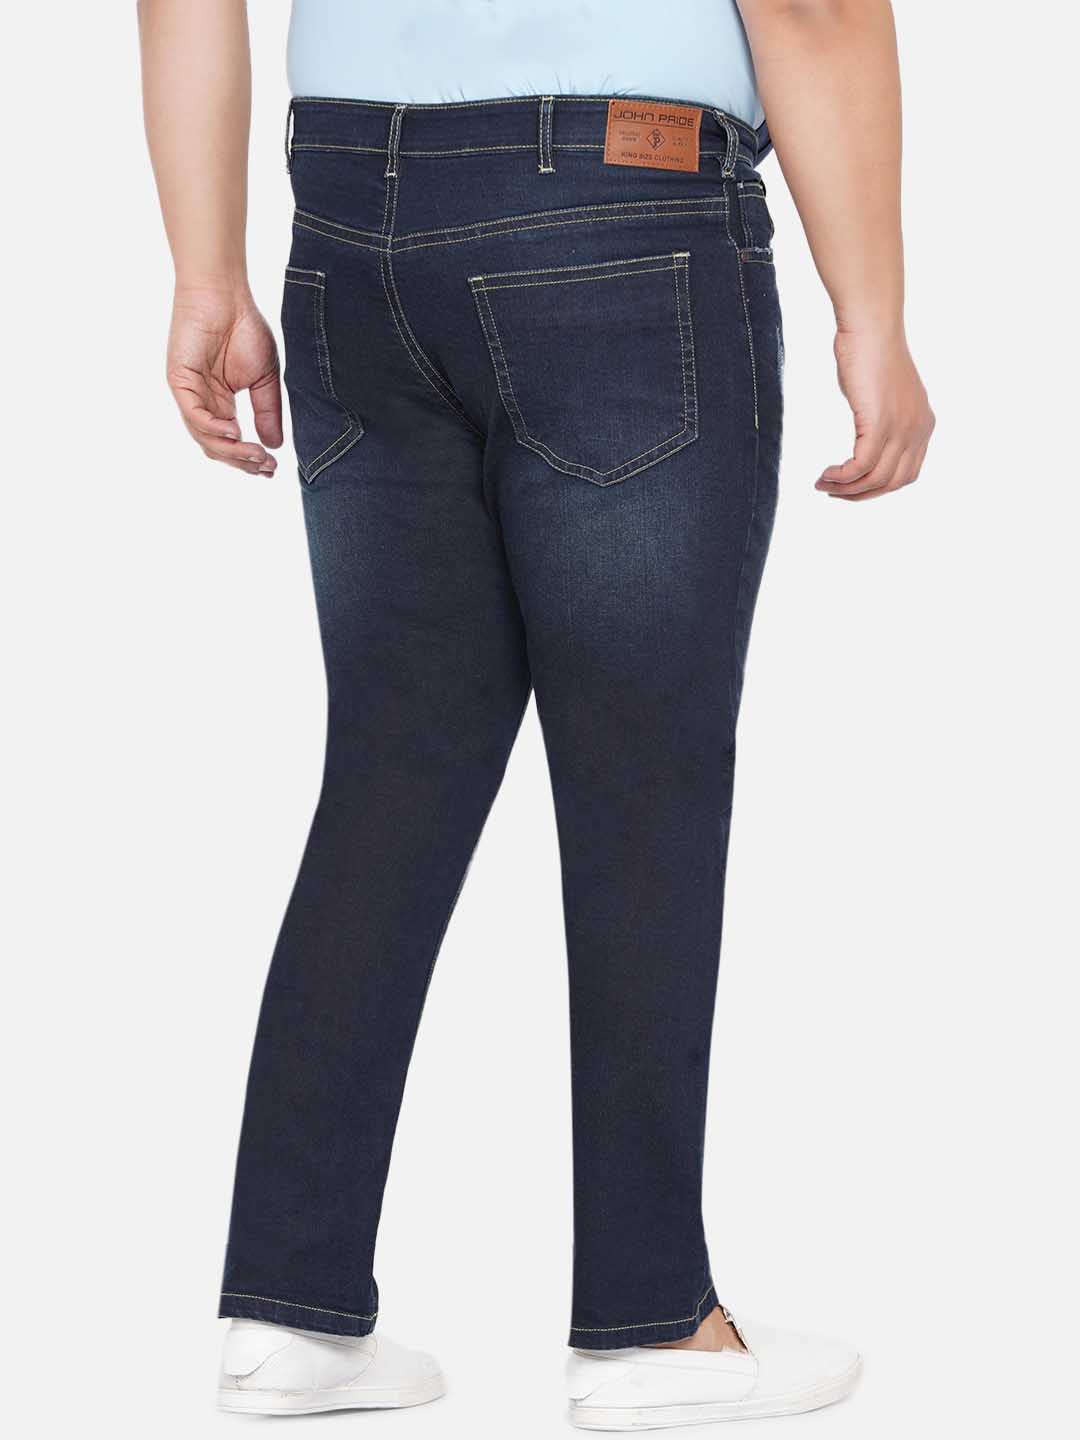 bottomwear/jeans/JPJ12235/jpj12235-6.jpg